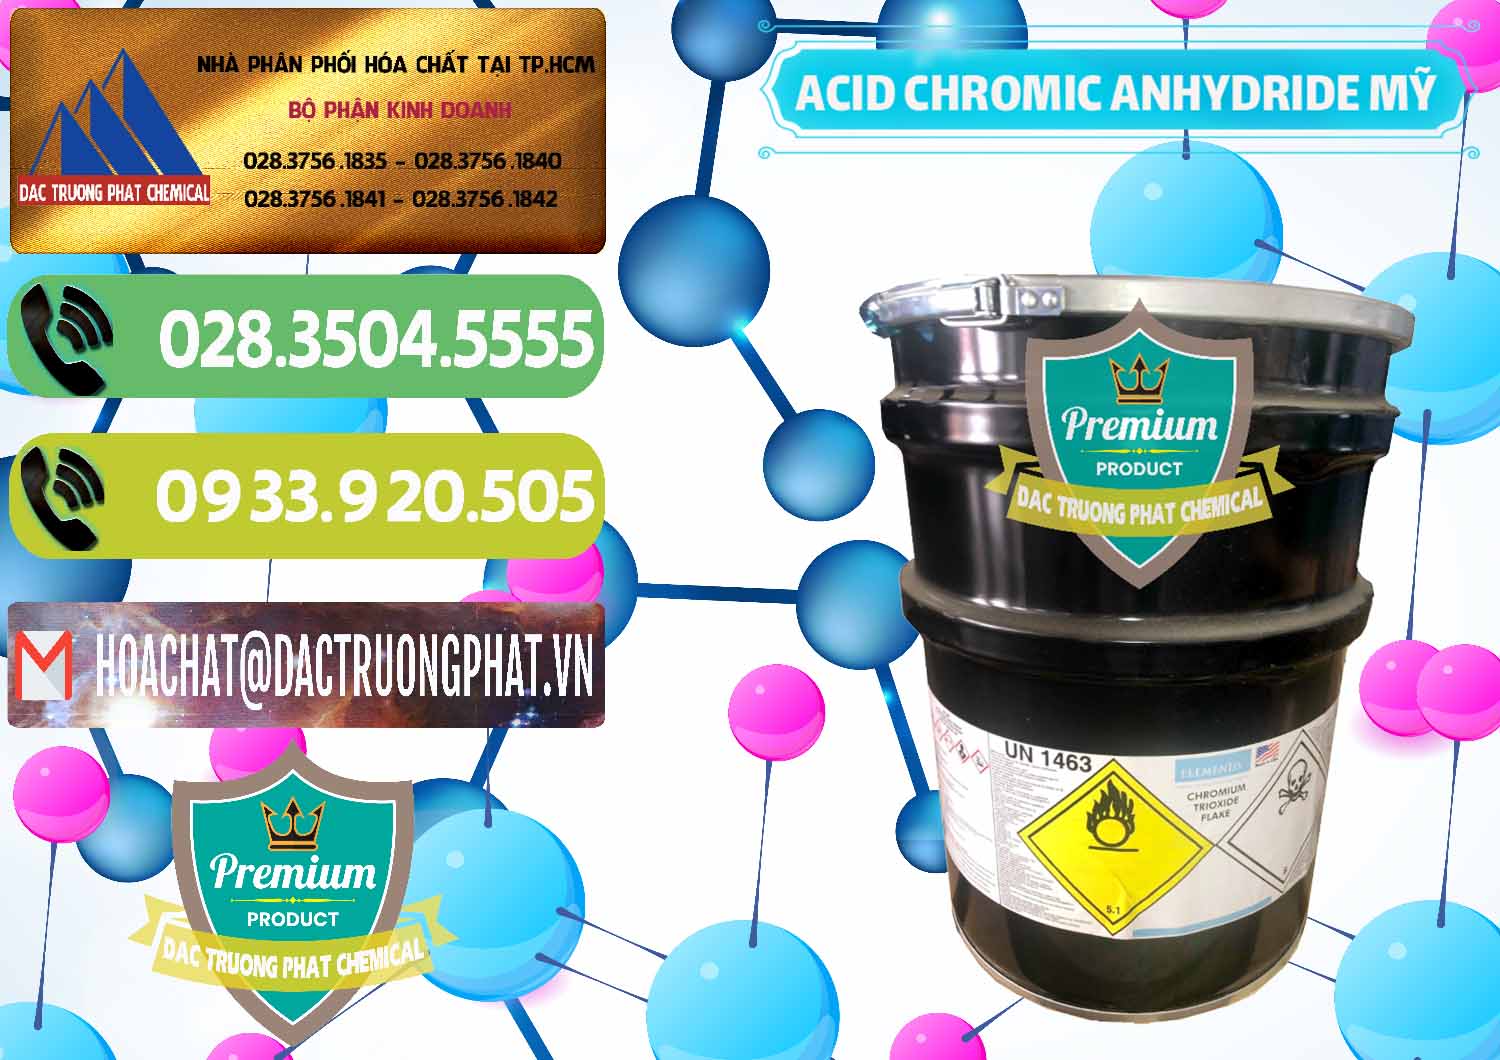 Cung cấp & bán Acid Chromic Anhydride - Cromic CRO3 USA Mỹ - 0364 - Đơn vị chuyên cung cấp - bán hóa chất tại TP.HCM - hoachatmientay.vn